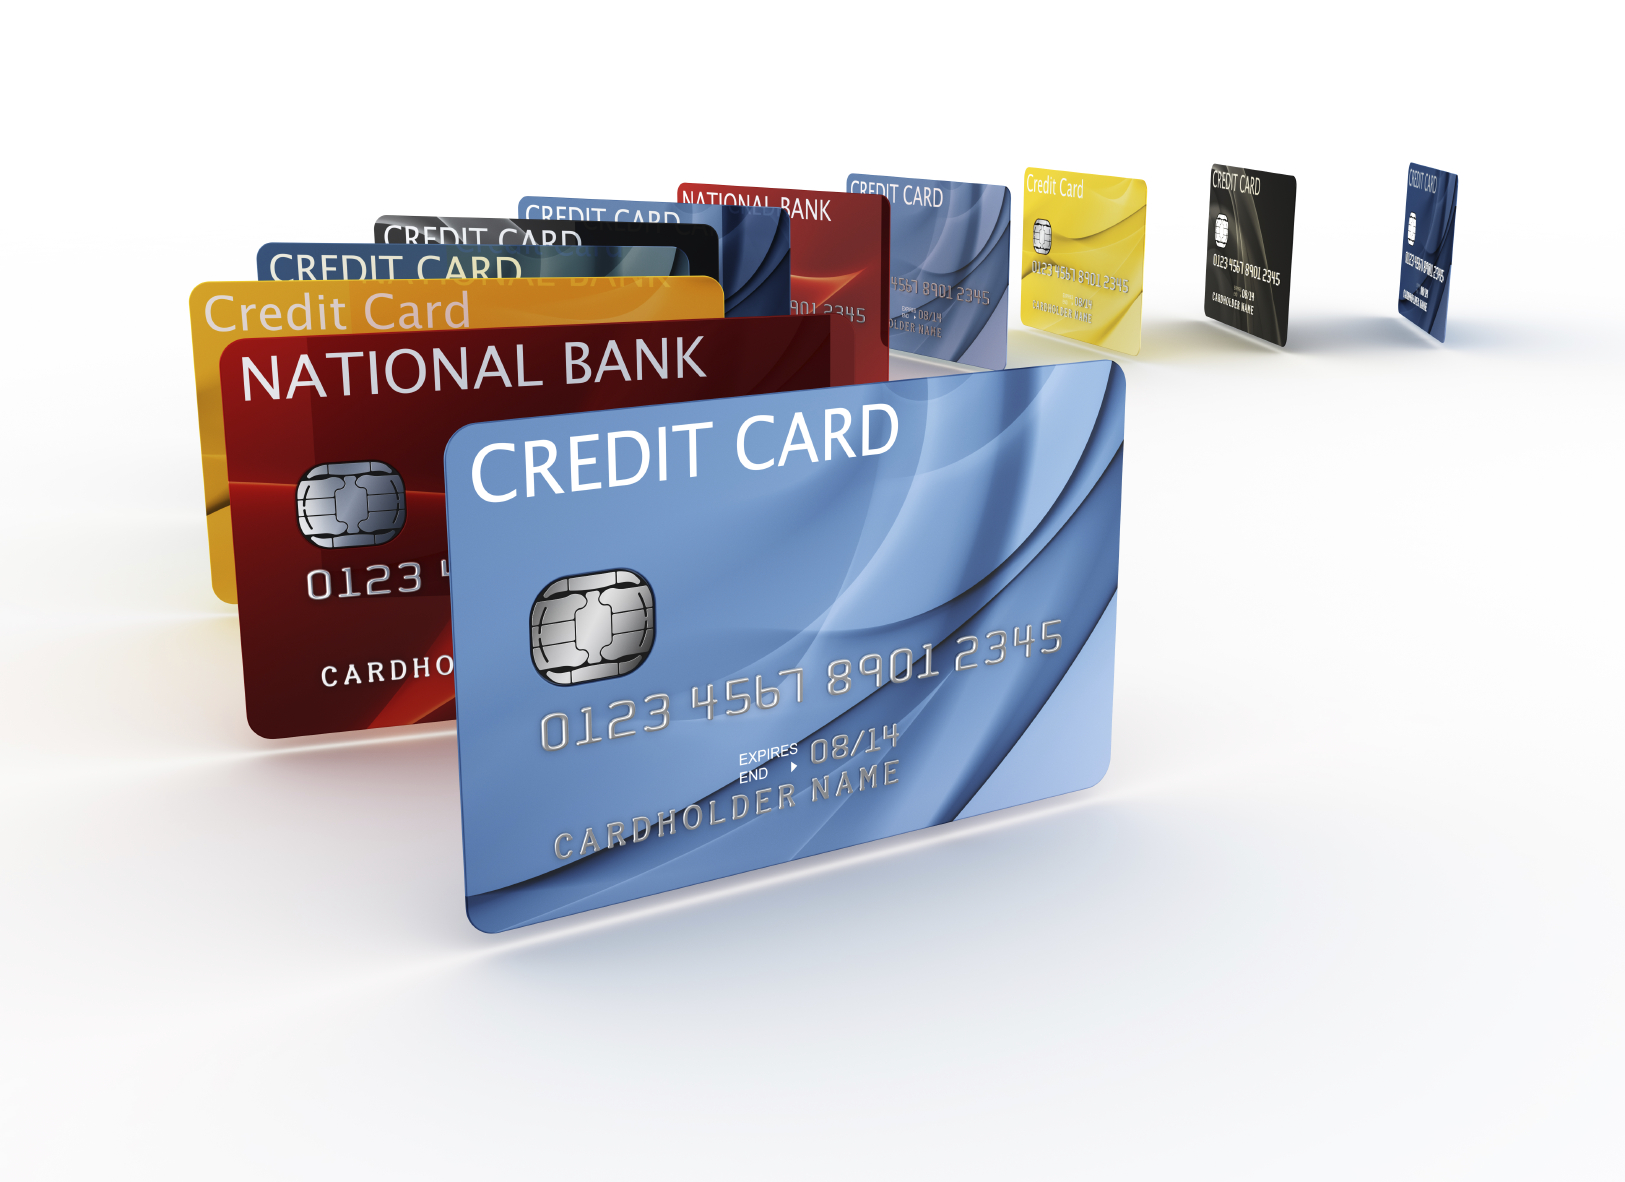 tại sao thẻ tín dụng chưa được sử dụng nhiều tại việt nam